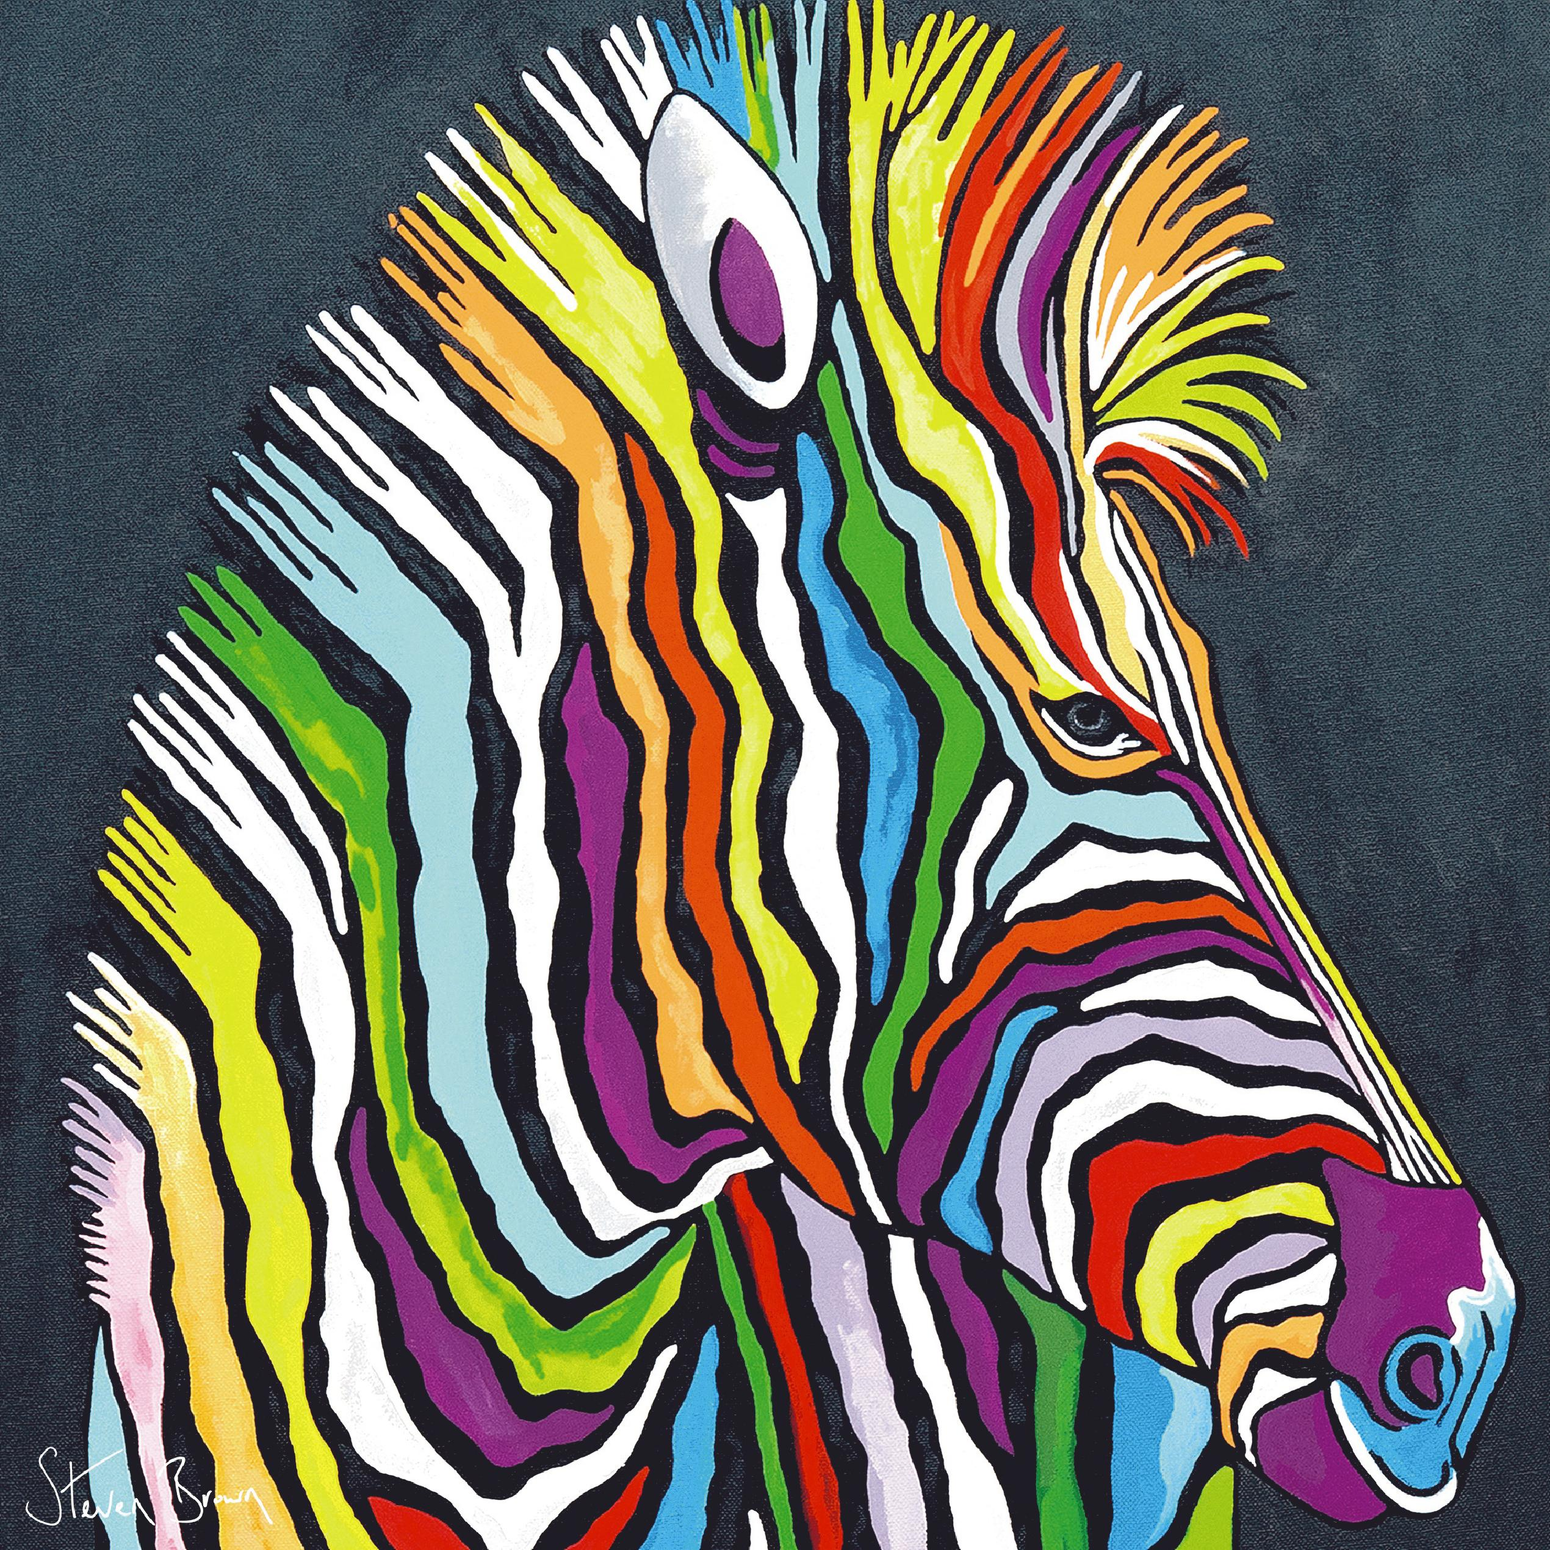 Multi-Coloured Zebra Art by Steven Brown